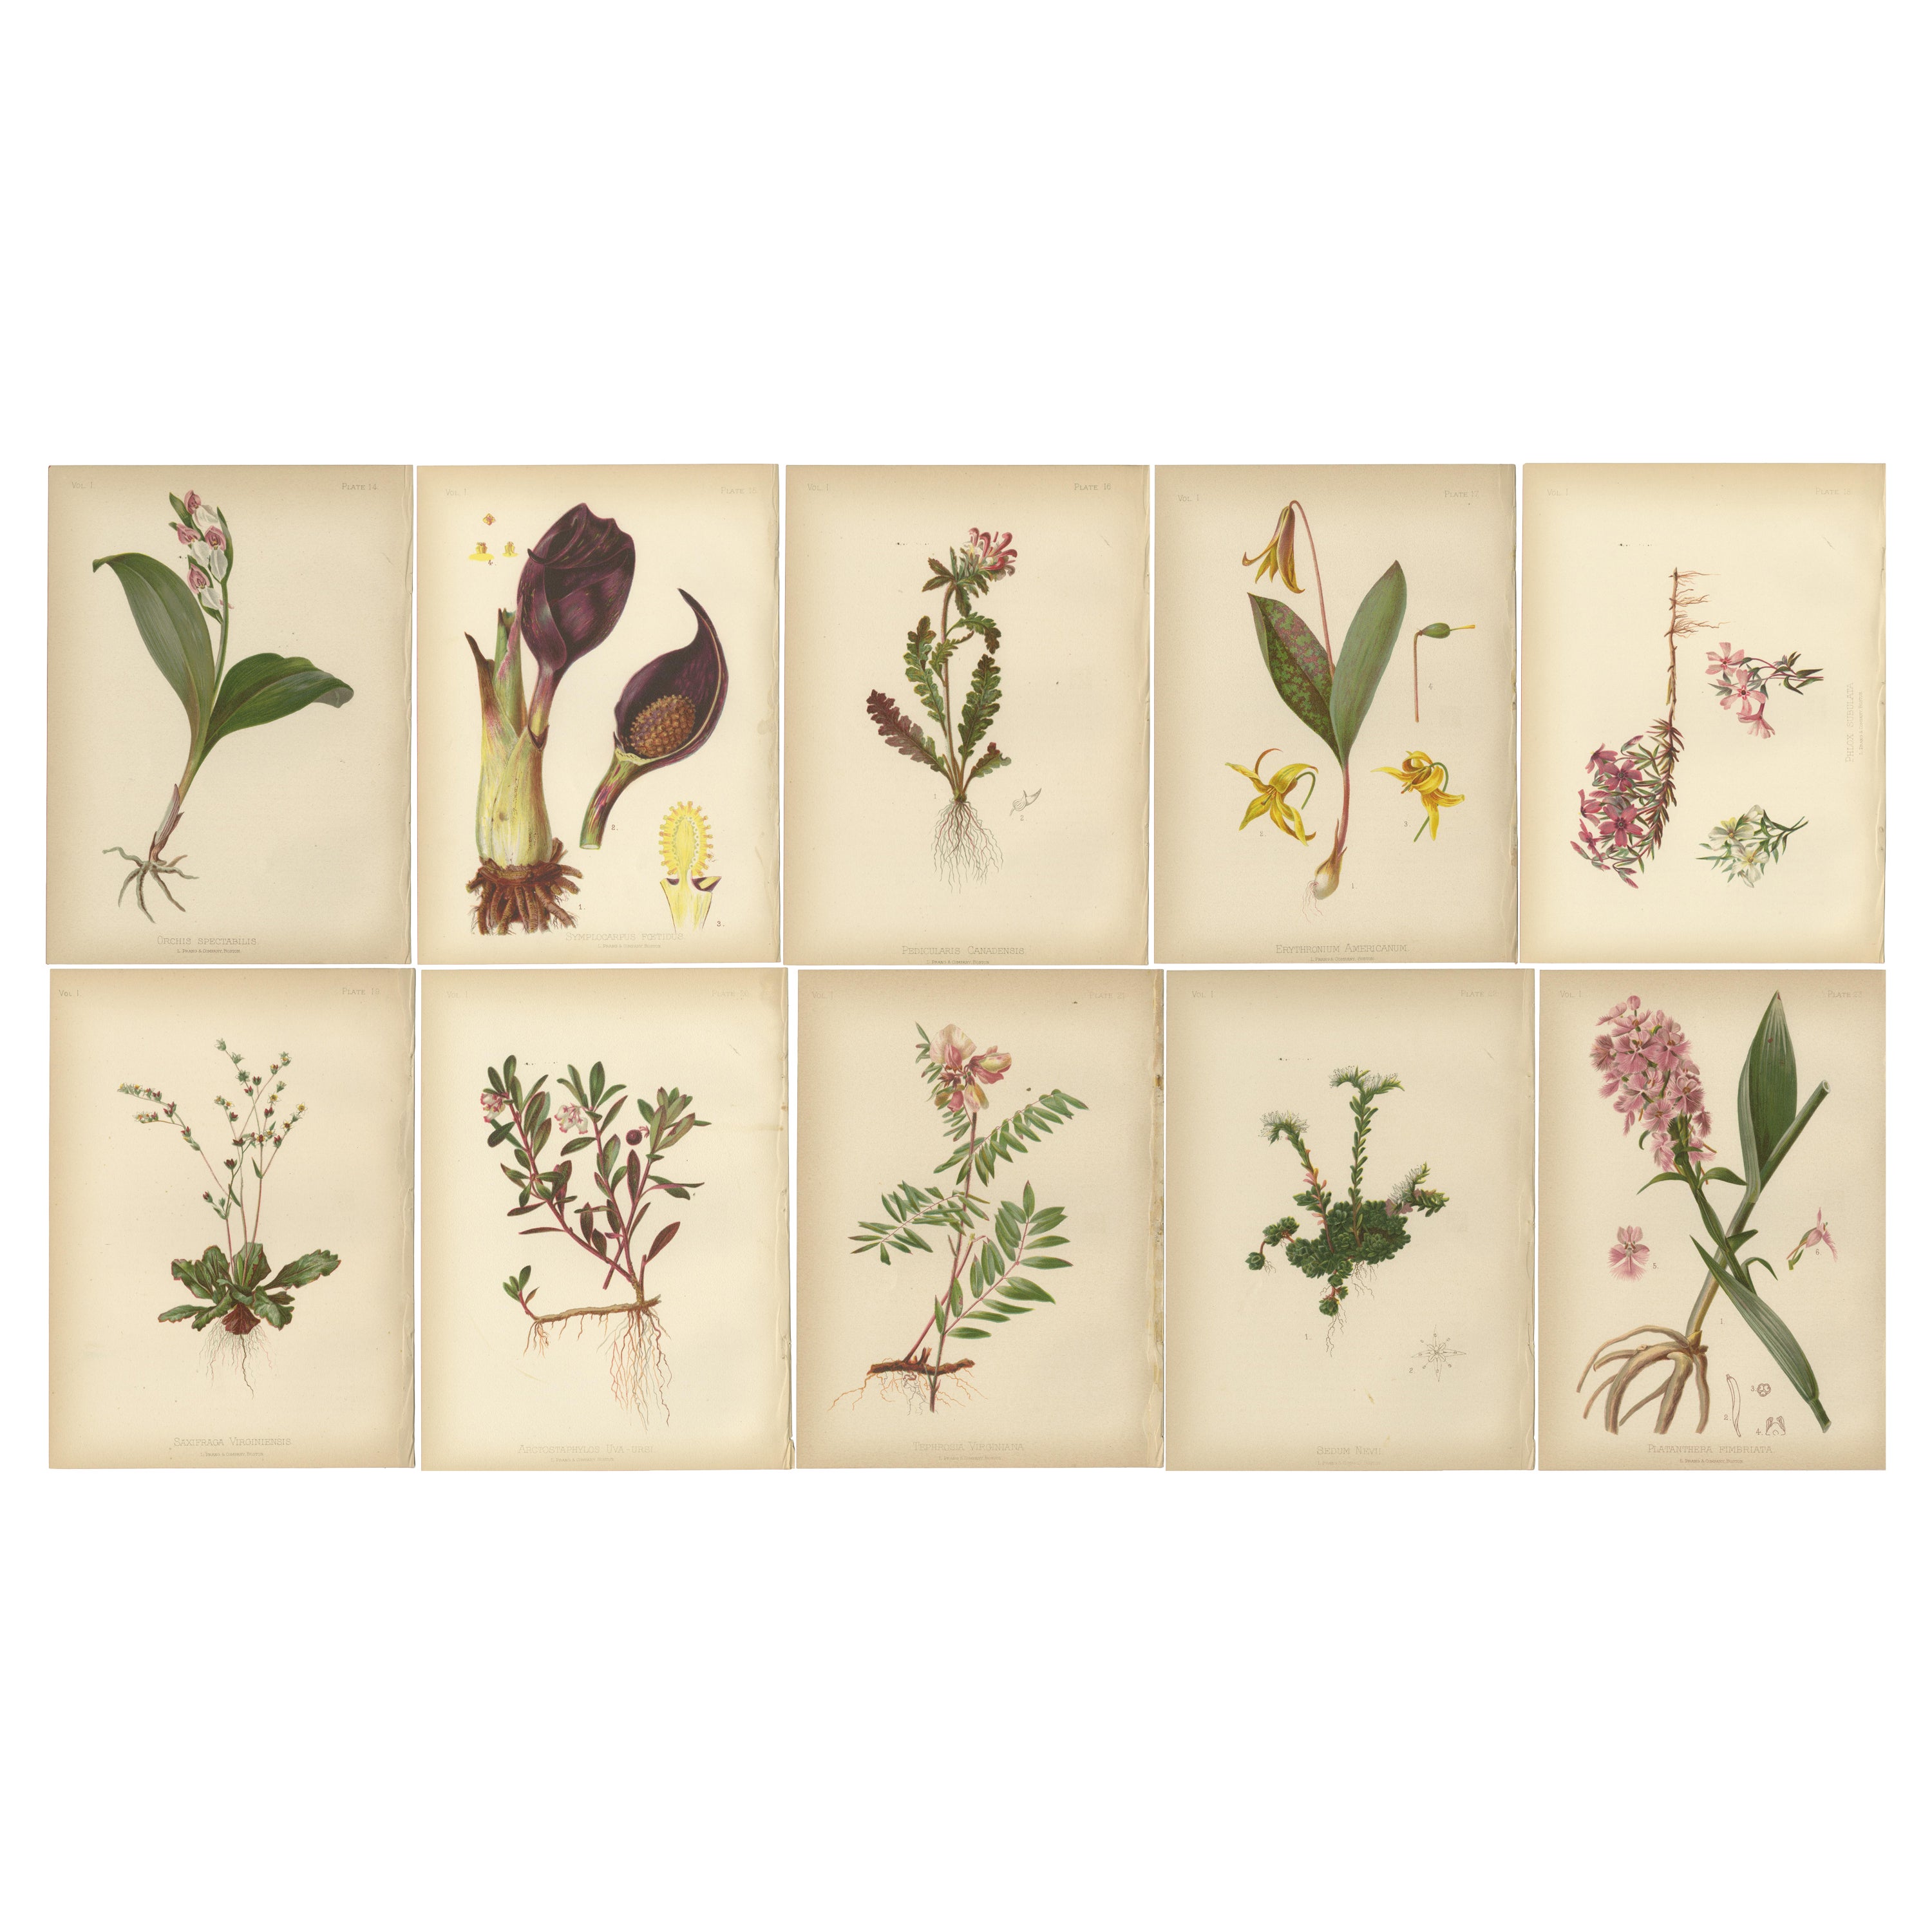 Flora der amerikanischen Ureinwohner der USA – Zehn Original botanische Chromolithograps, 1879